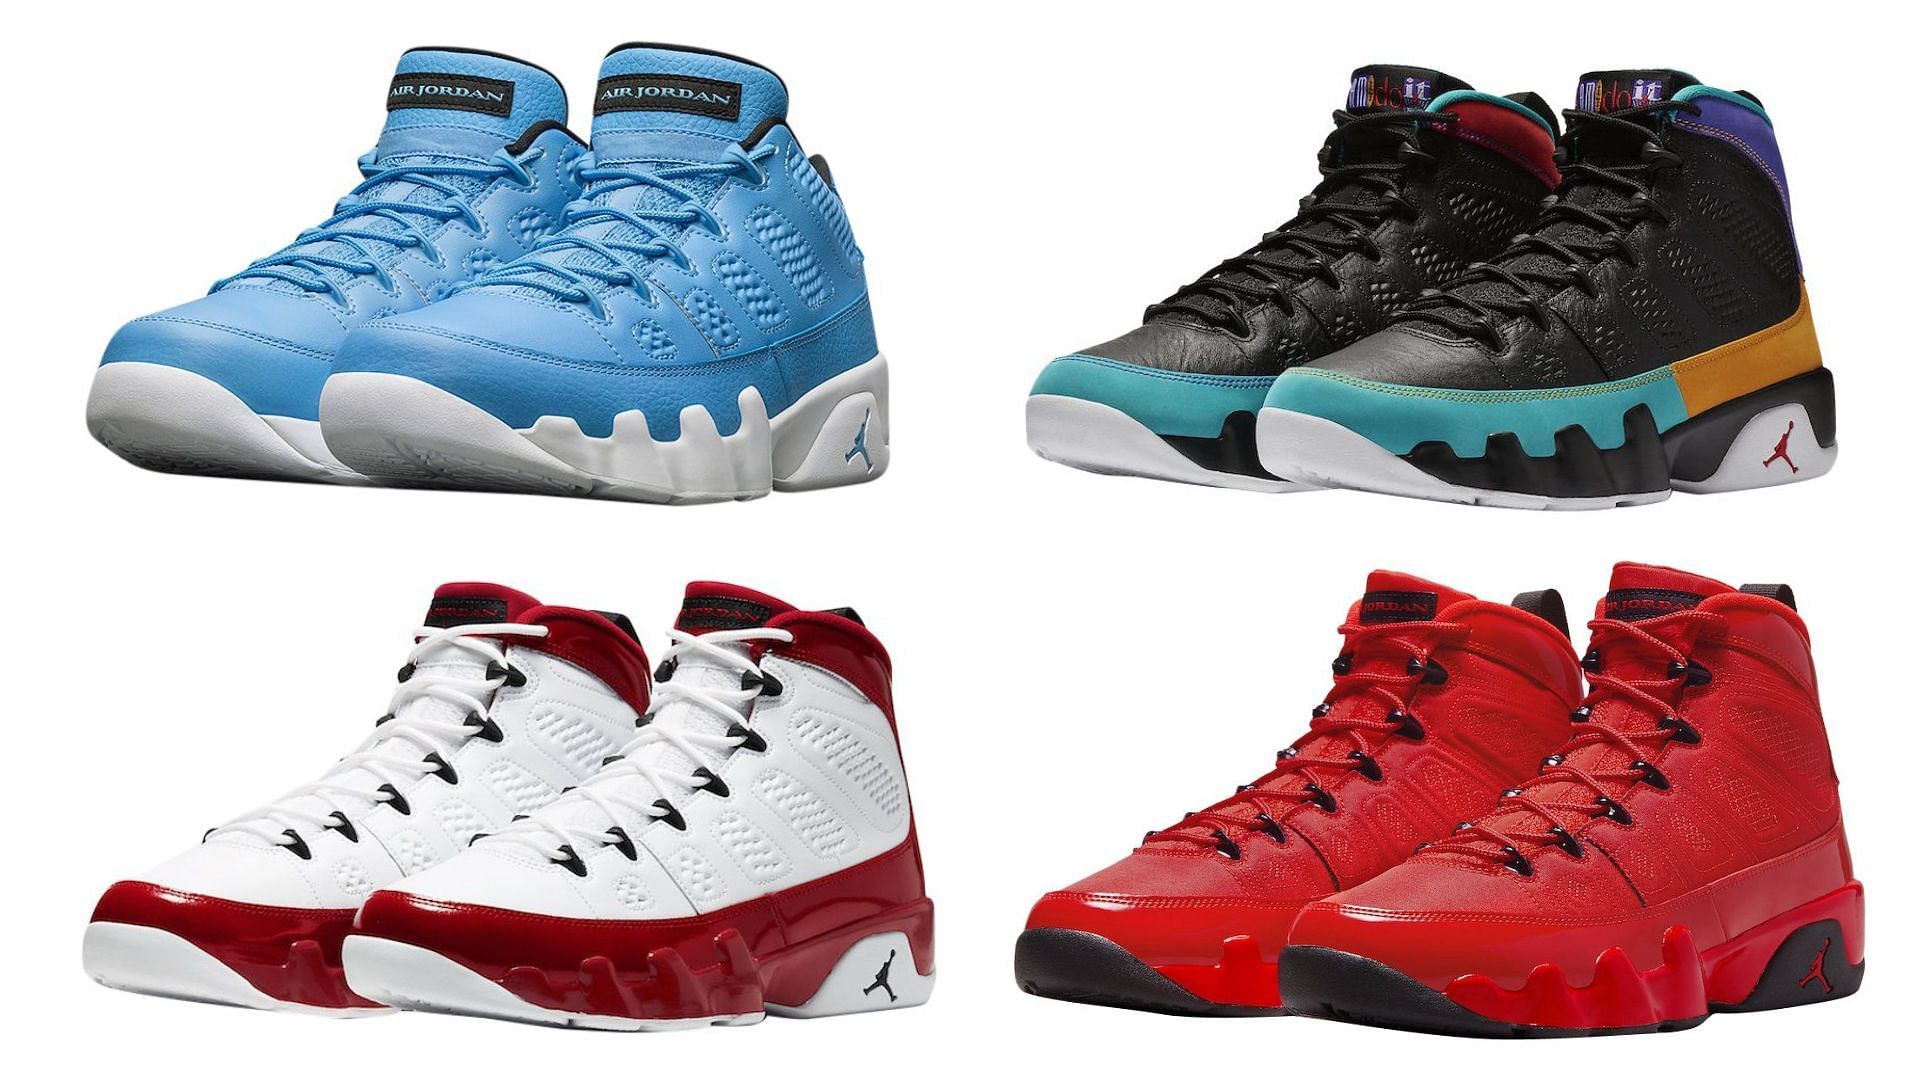 Popular Air Jordan 9 colorways of all time (Image via Sportskeeda)